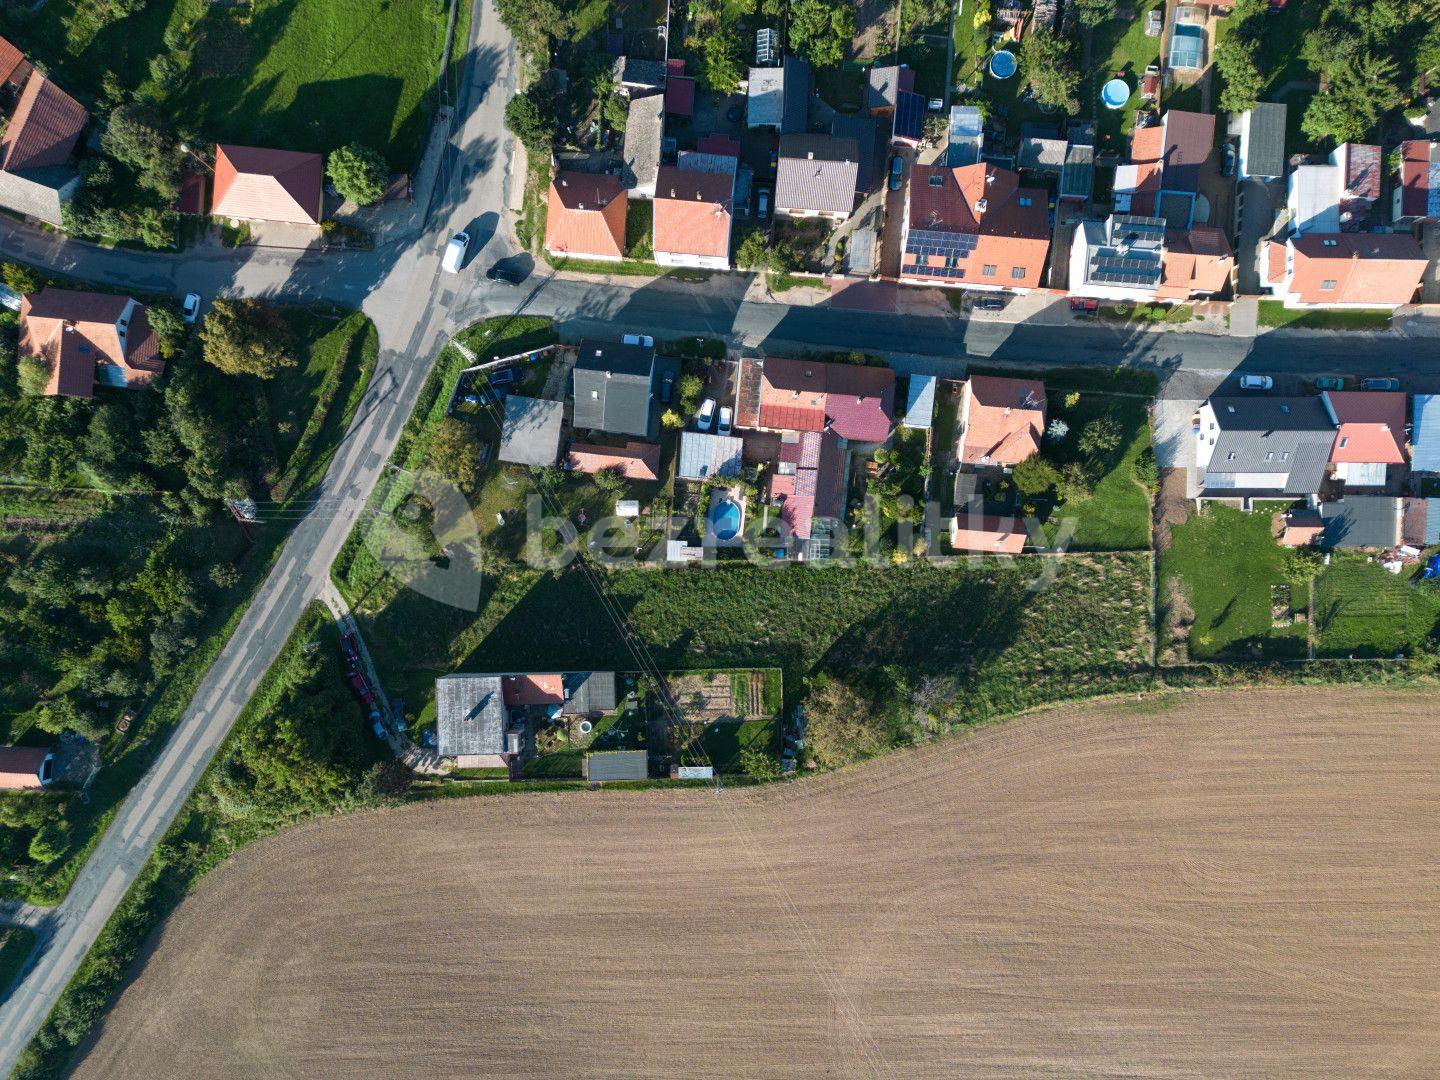 plot for sale, 1,656 m², Babice u Rosic, Jihomoravský Region